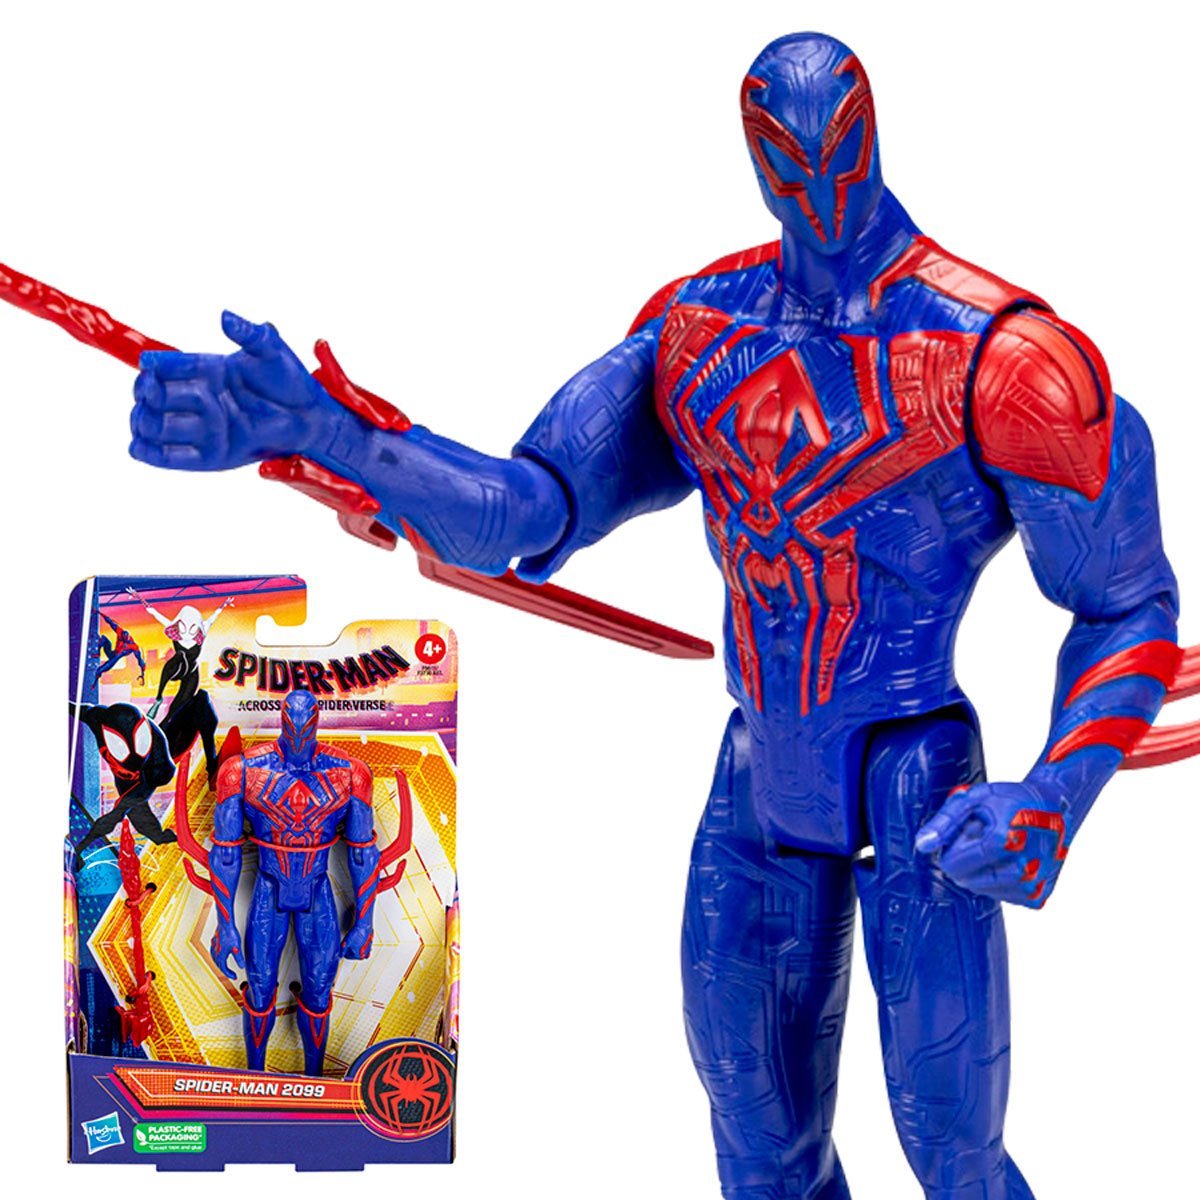 Spider-man Into The Spider-verse Spider-gwen 6" Figure Hasbro 2018 for sale online 